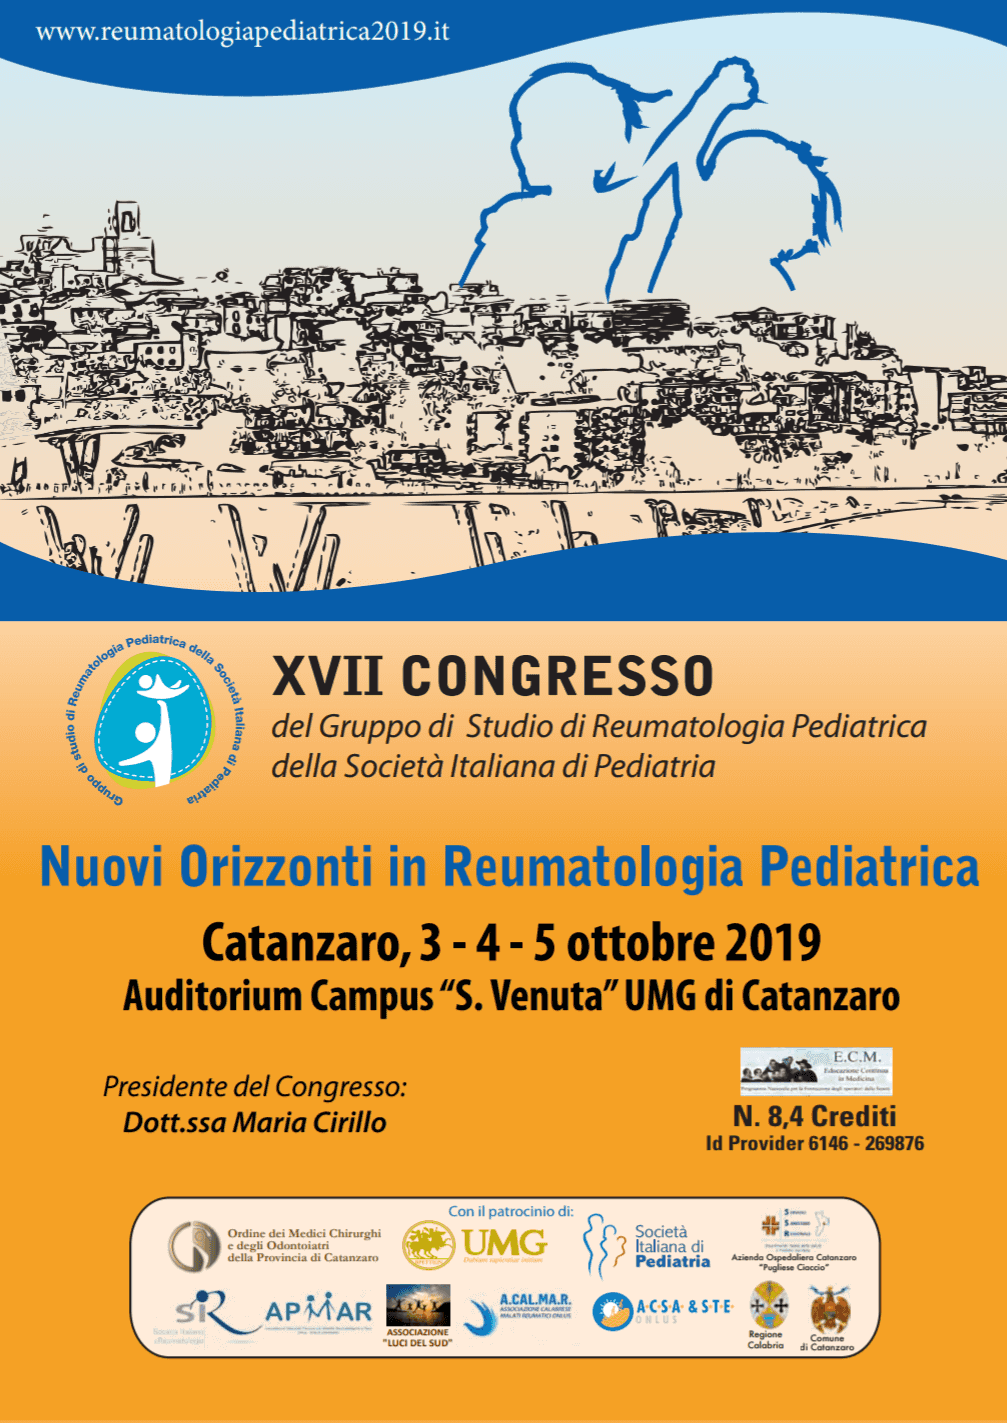 In Calabria la XVII edizione: Nuovi orizzonti in Reumatologia Pediatrica